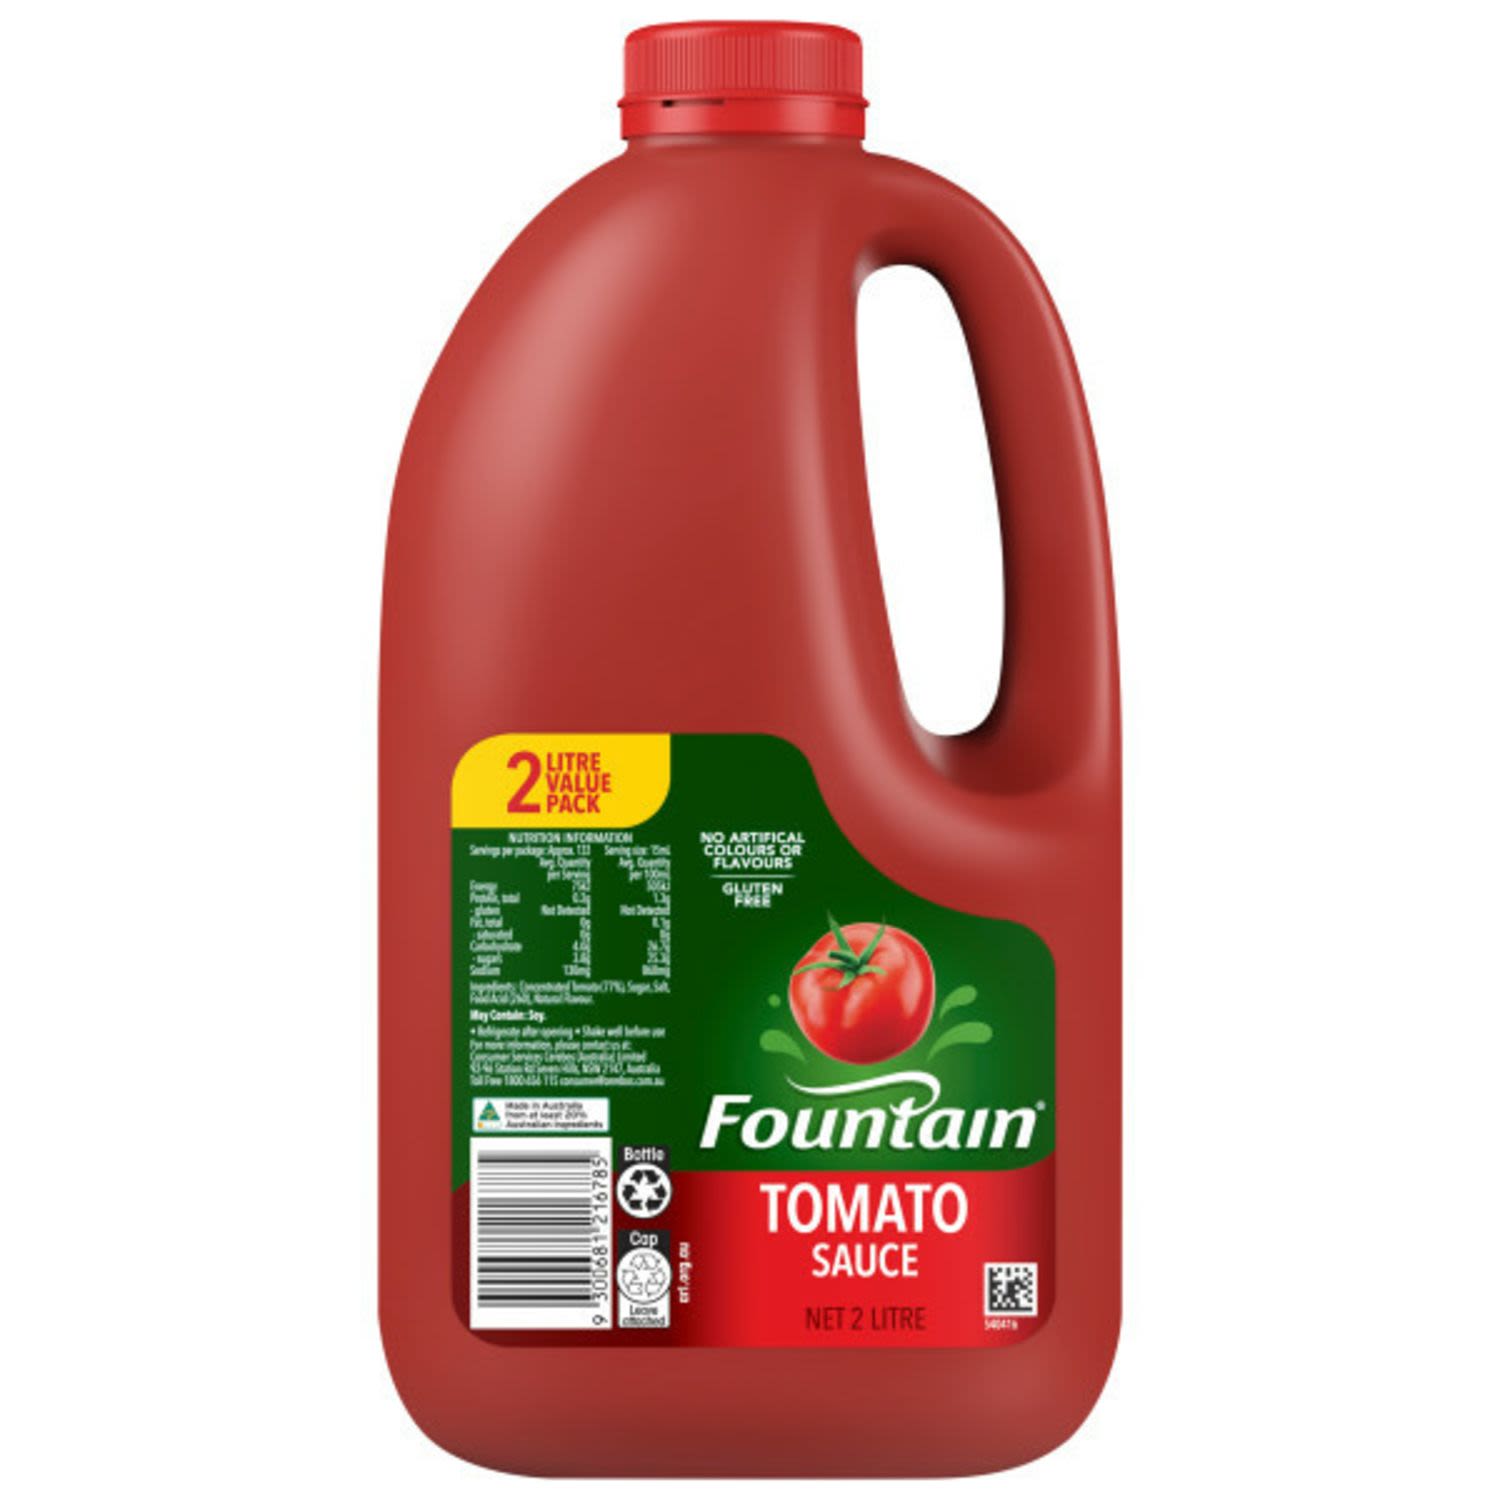 Fountain Tomato Sauce, 2 Litre